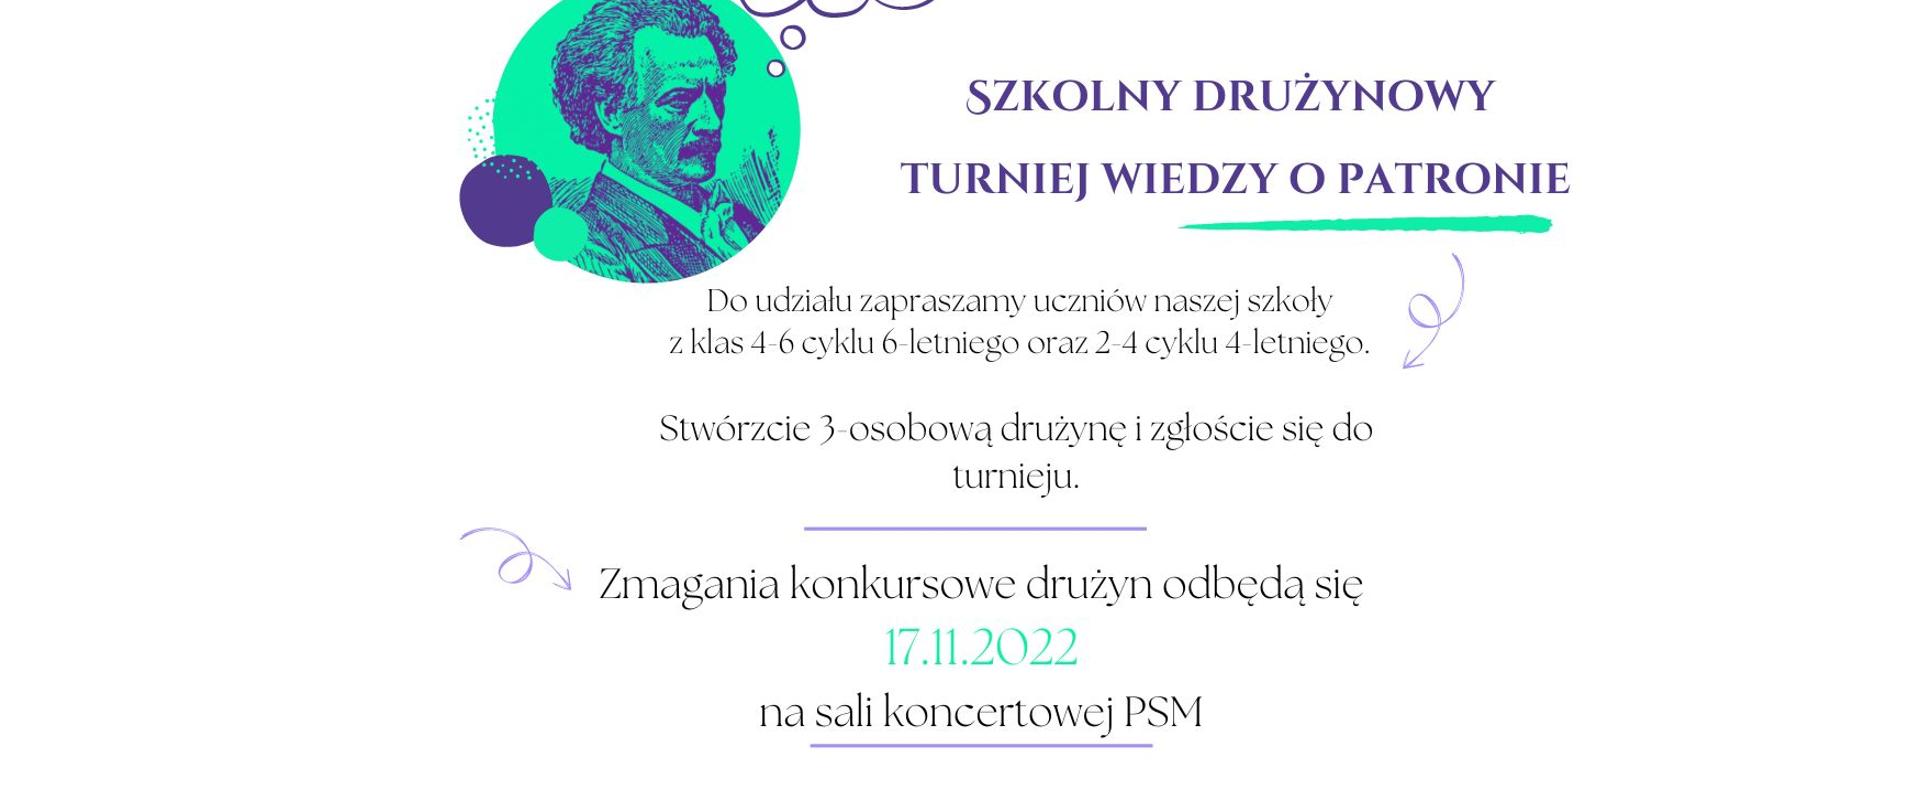 plakat konkursu z wizerunkiem I.J. Paderewskiego w zielonym okręgu. Na białym tle podana data, miejsce i zapowiedź konkursu